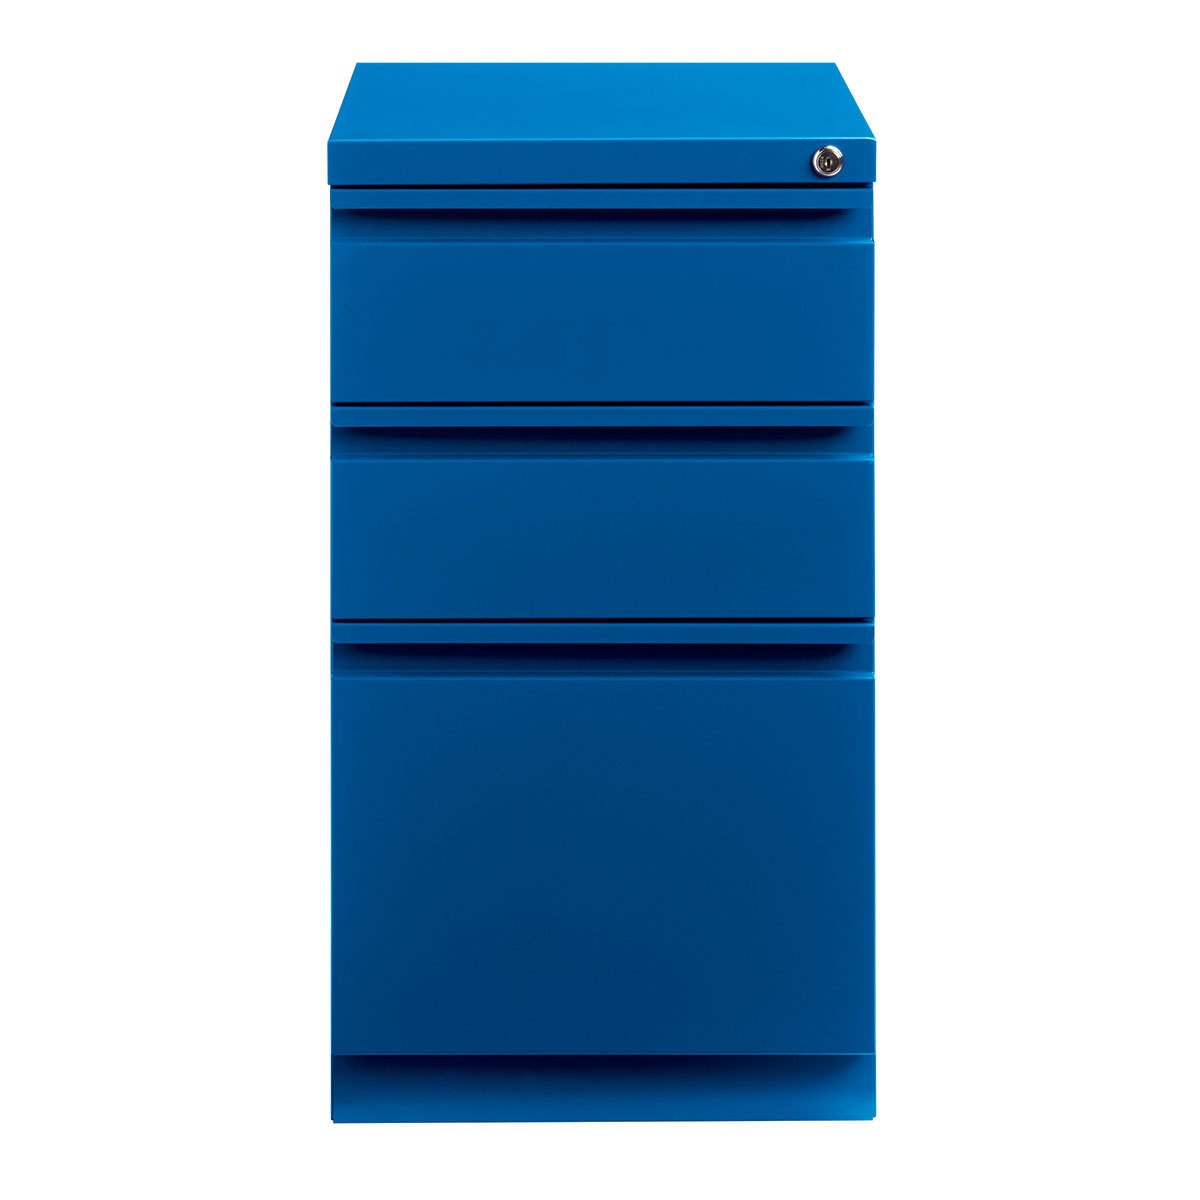 Hirsh archivero metálico dos cajones lapiceros y cajón archivero tamaño carta color azul